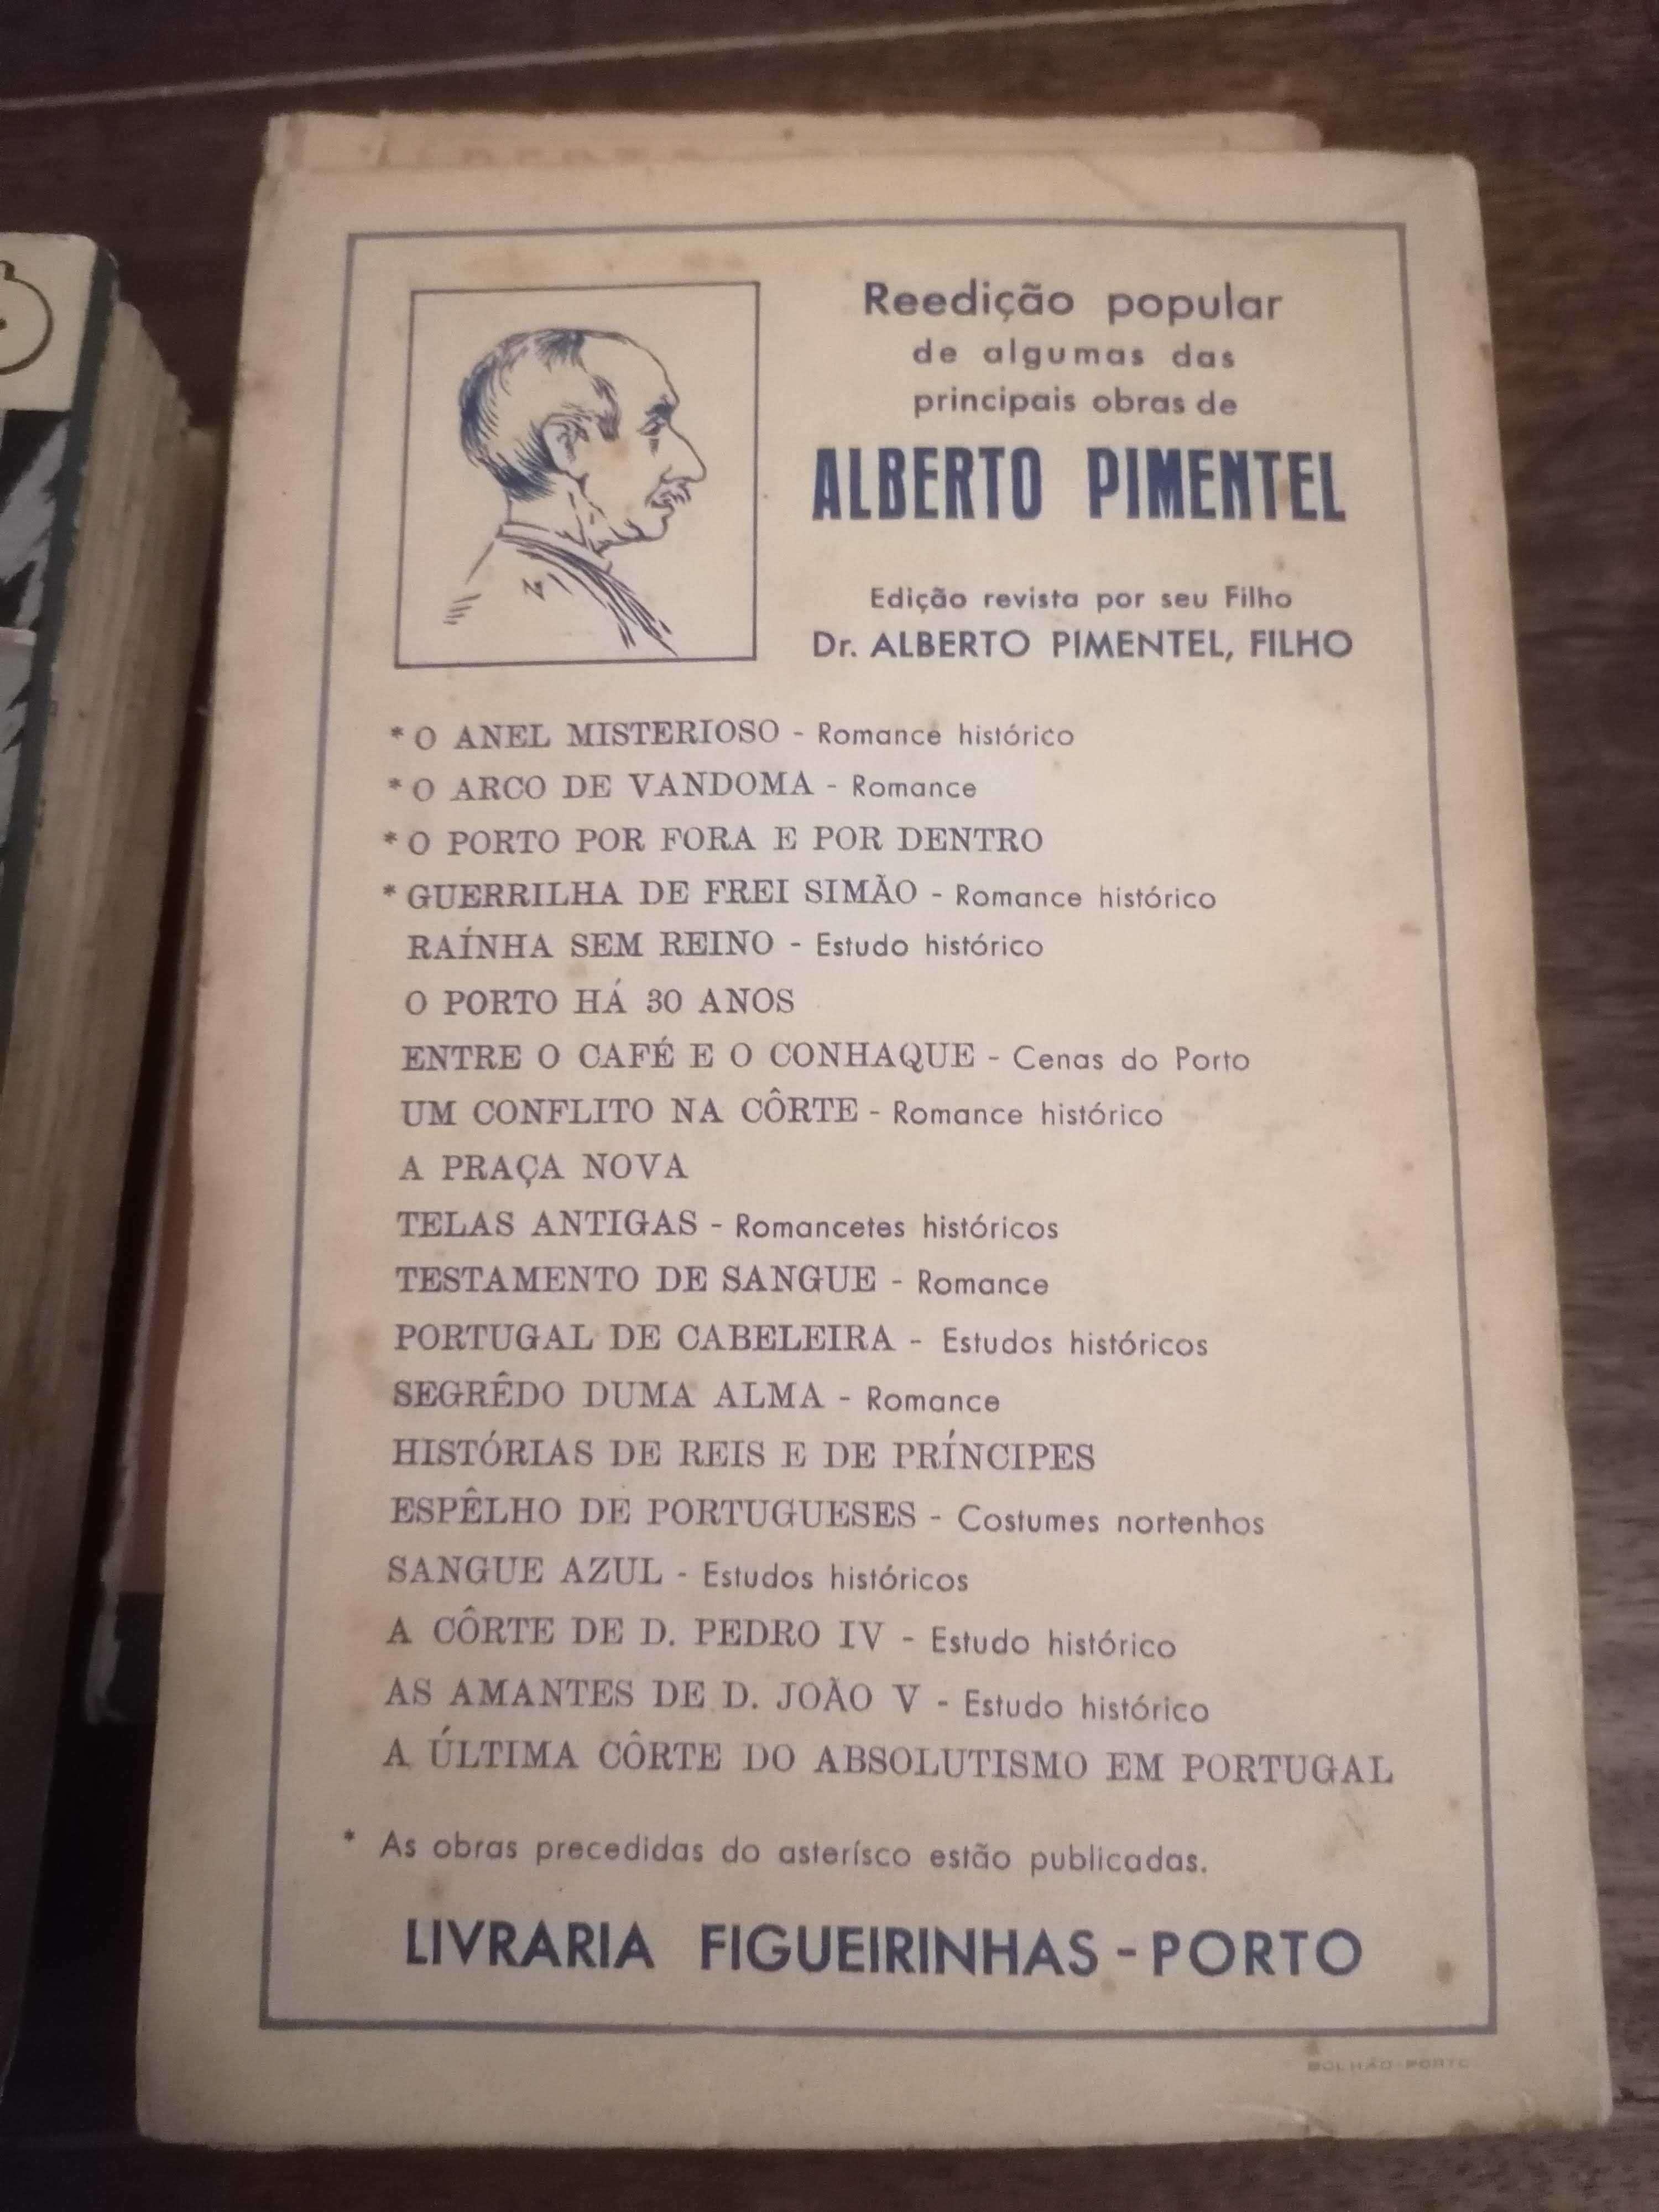 4 (QUATRO) Raros Romances de Alberto Pimentel